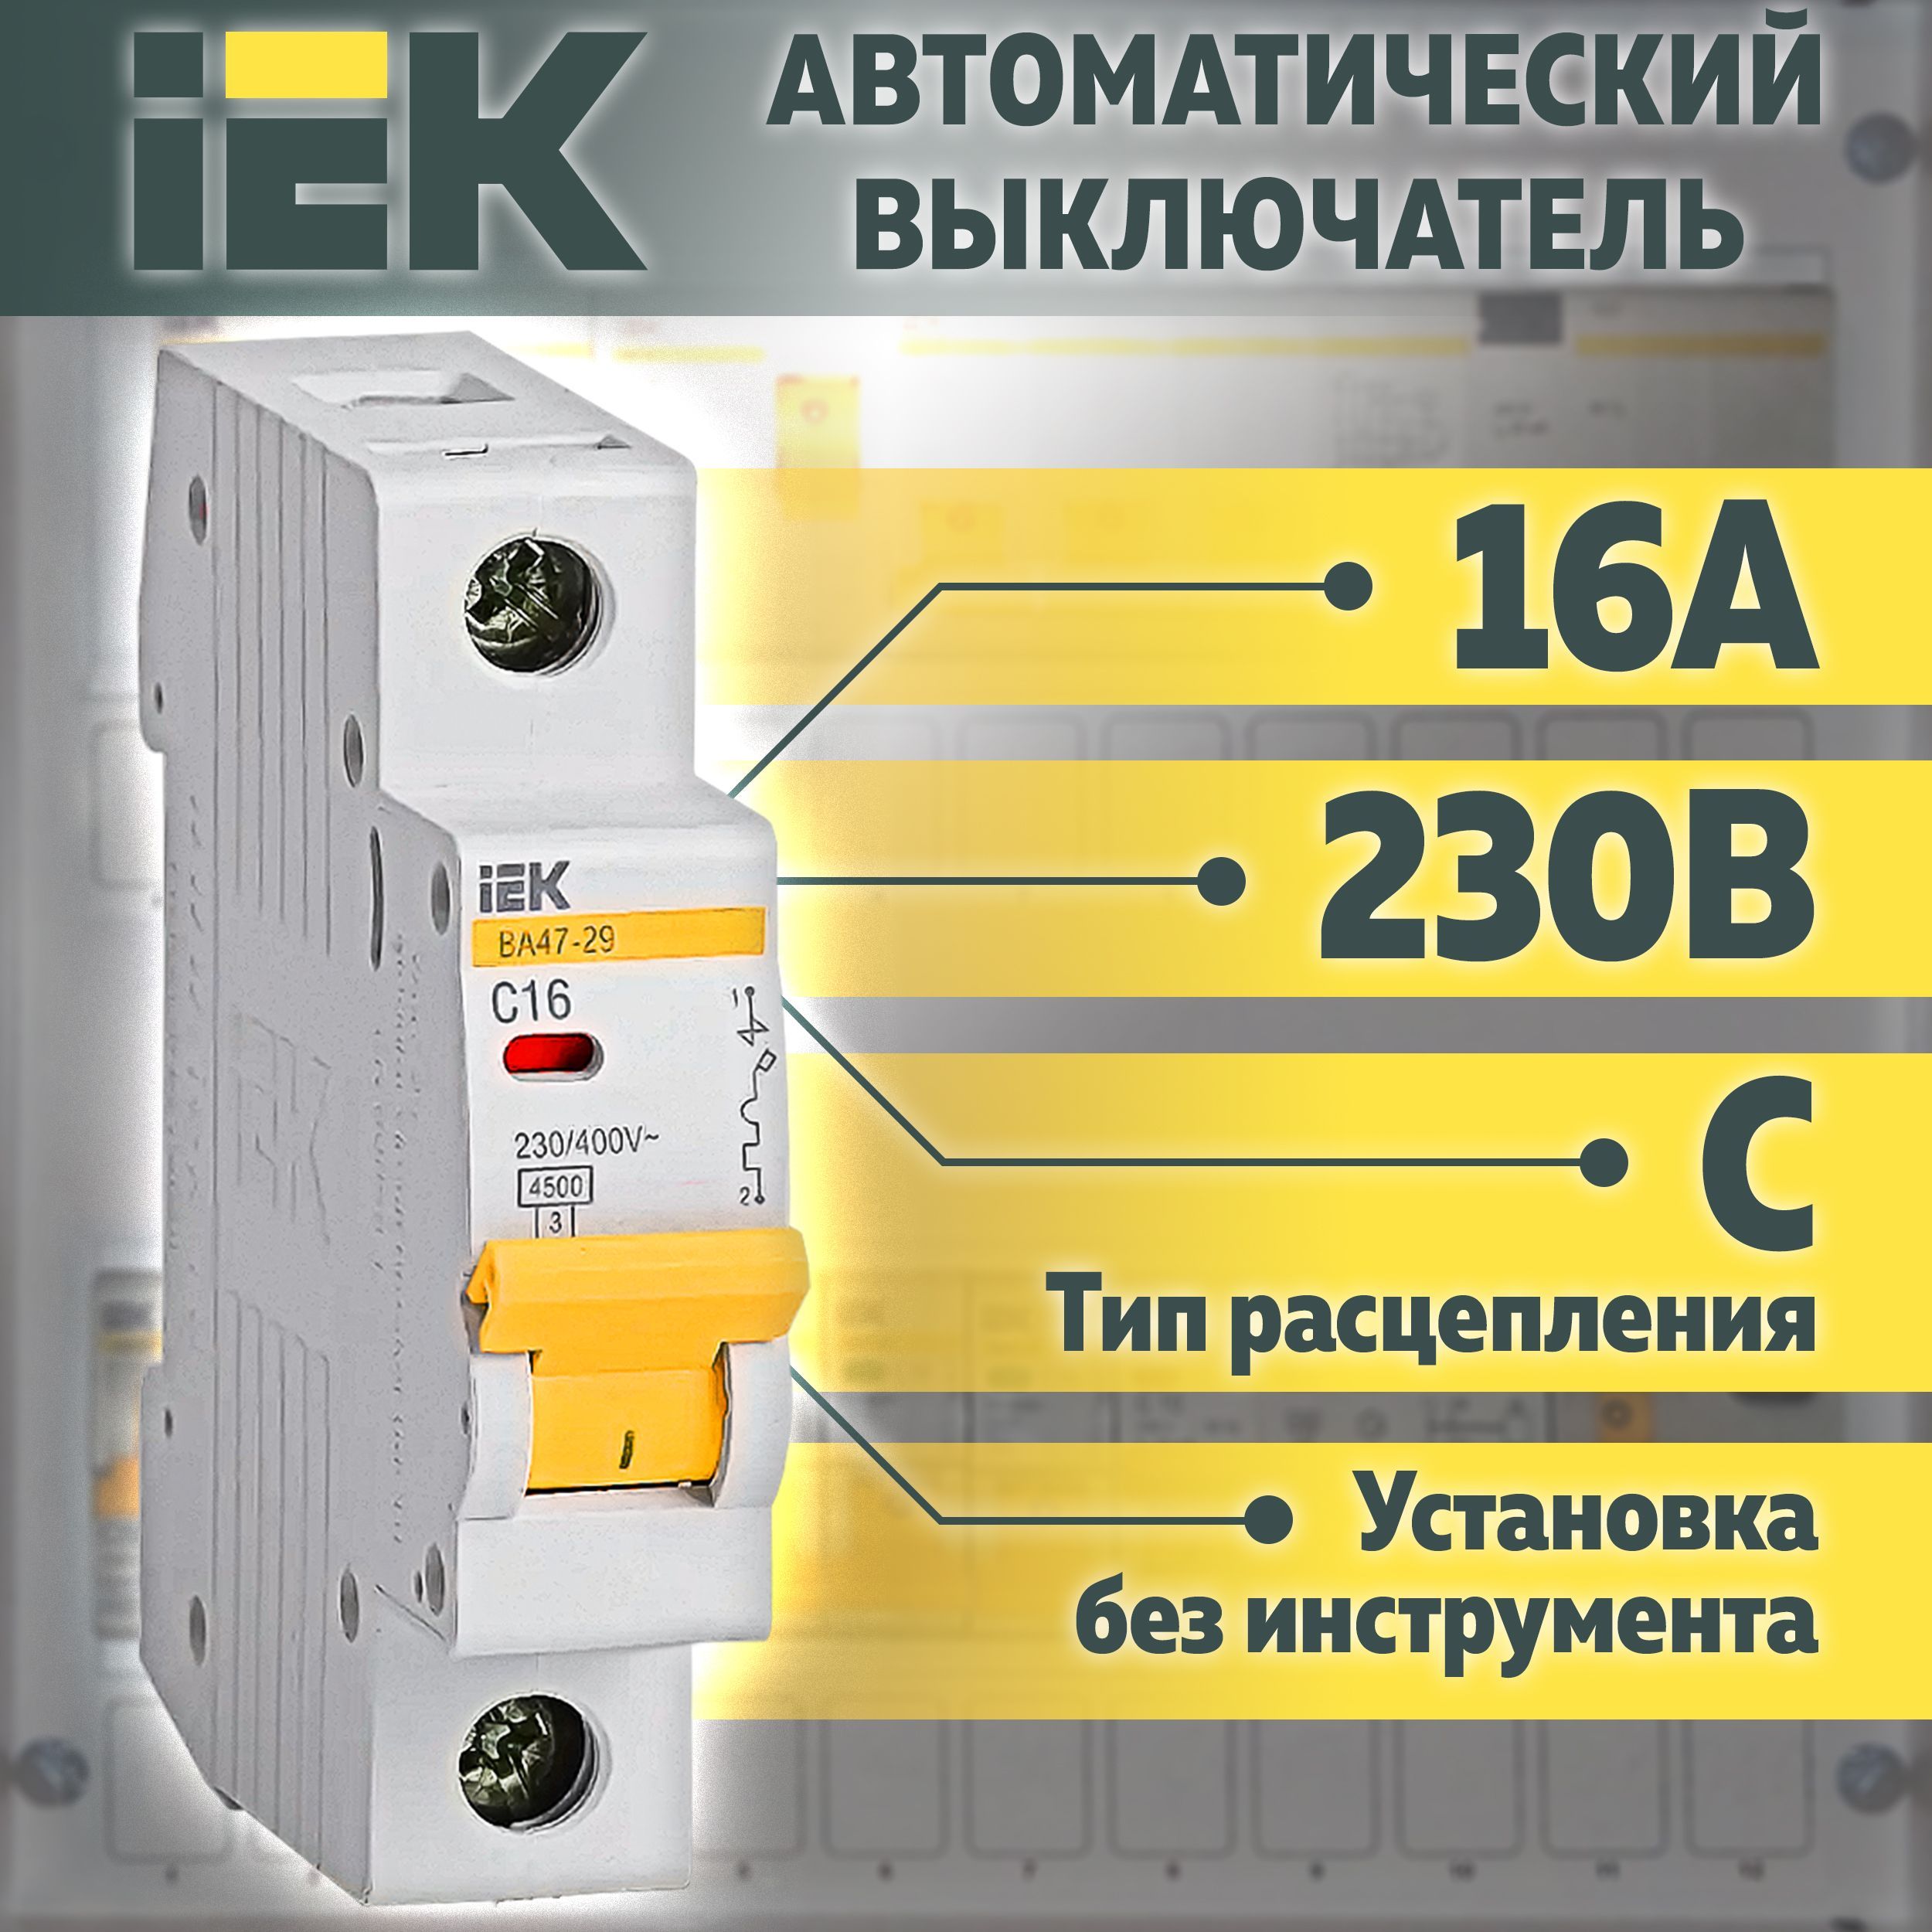 Автоматический выключатель IEK ва47-29 1p 25а 4.5ка Тип c. IEK c4 автомат. Вводный автомат IEK c32. IEK c21. Автоматический выключатель iek c16